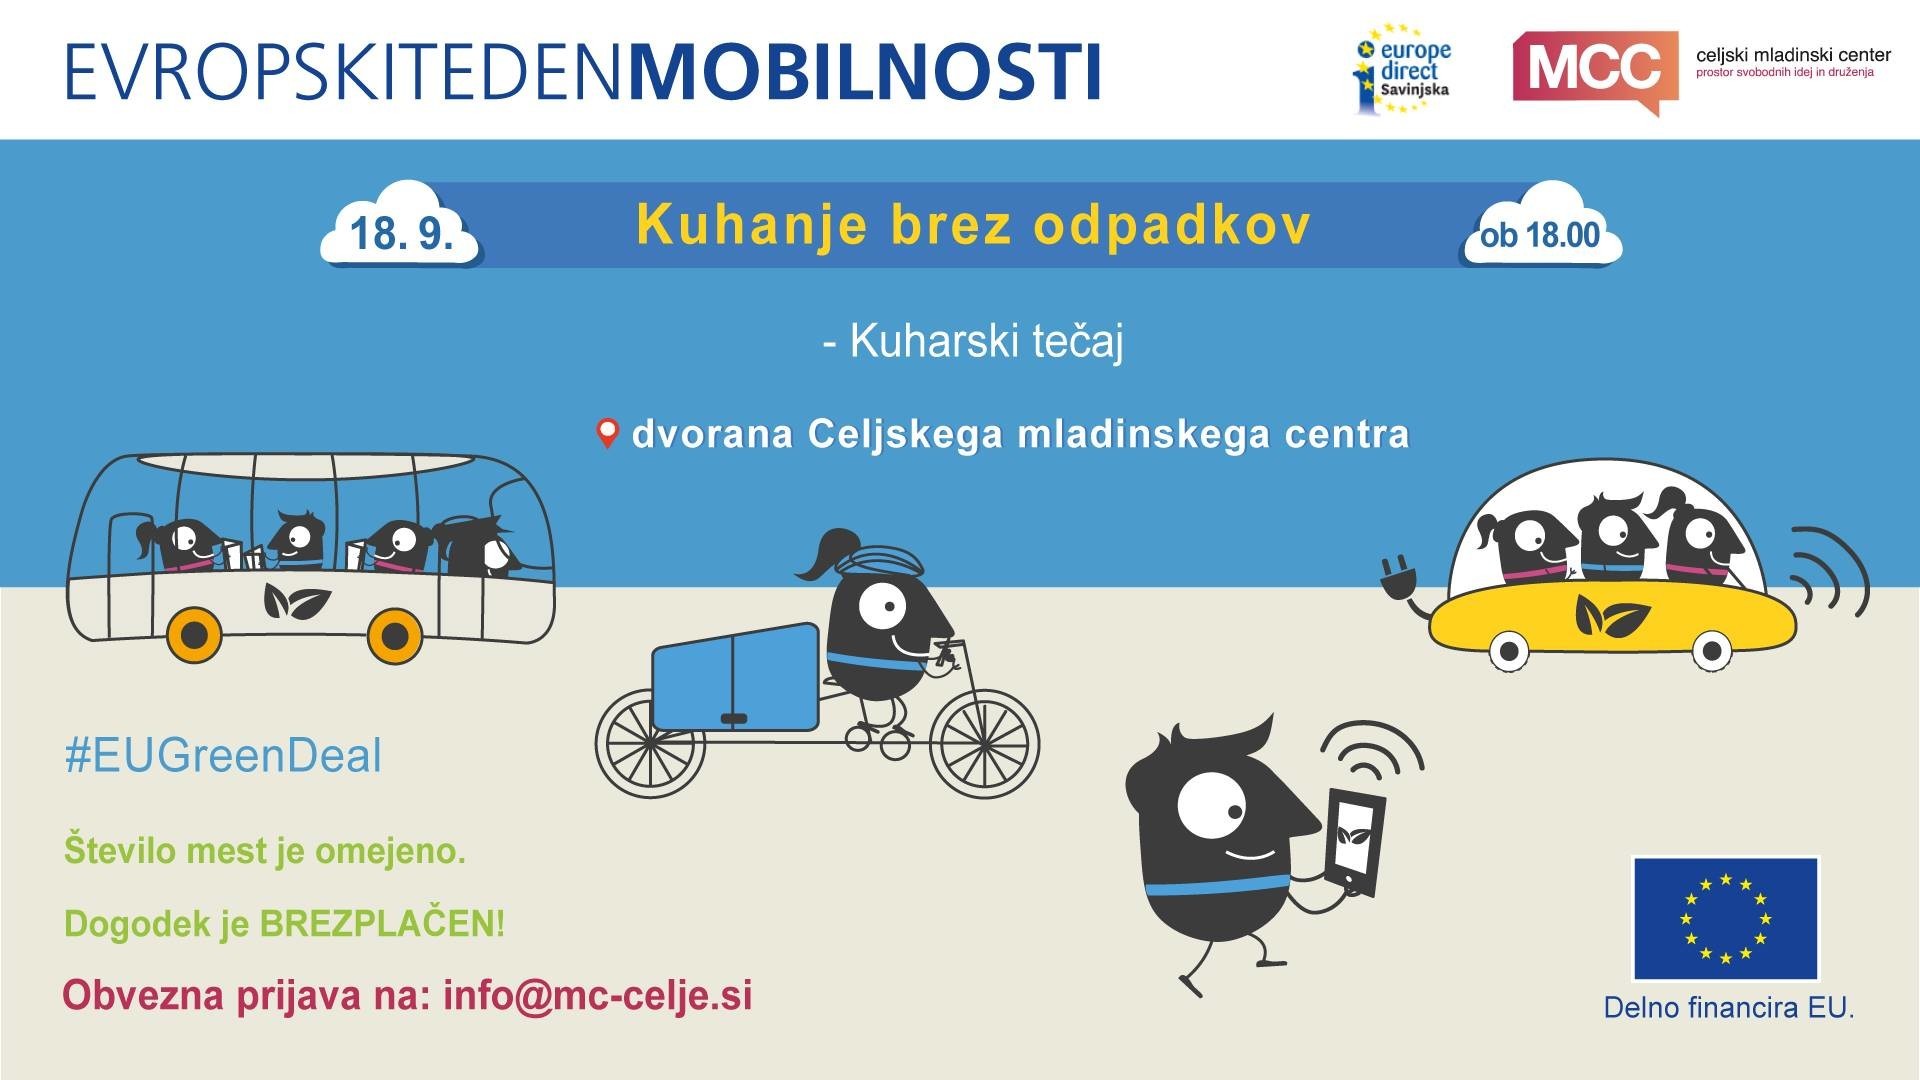 Evropski teden mobilnosti 2020: Kuharski tečaj - kuhanje brez odpadkov